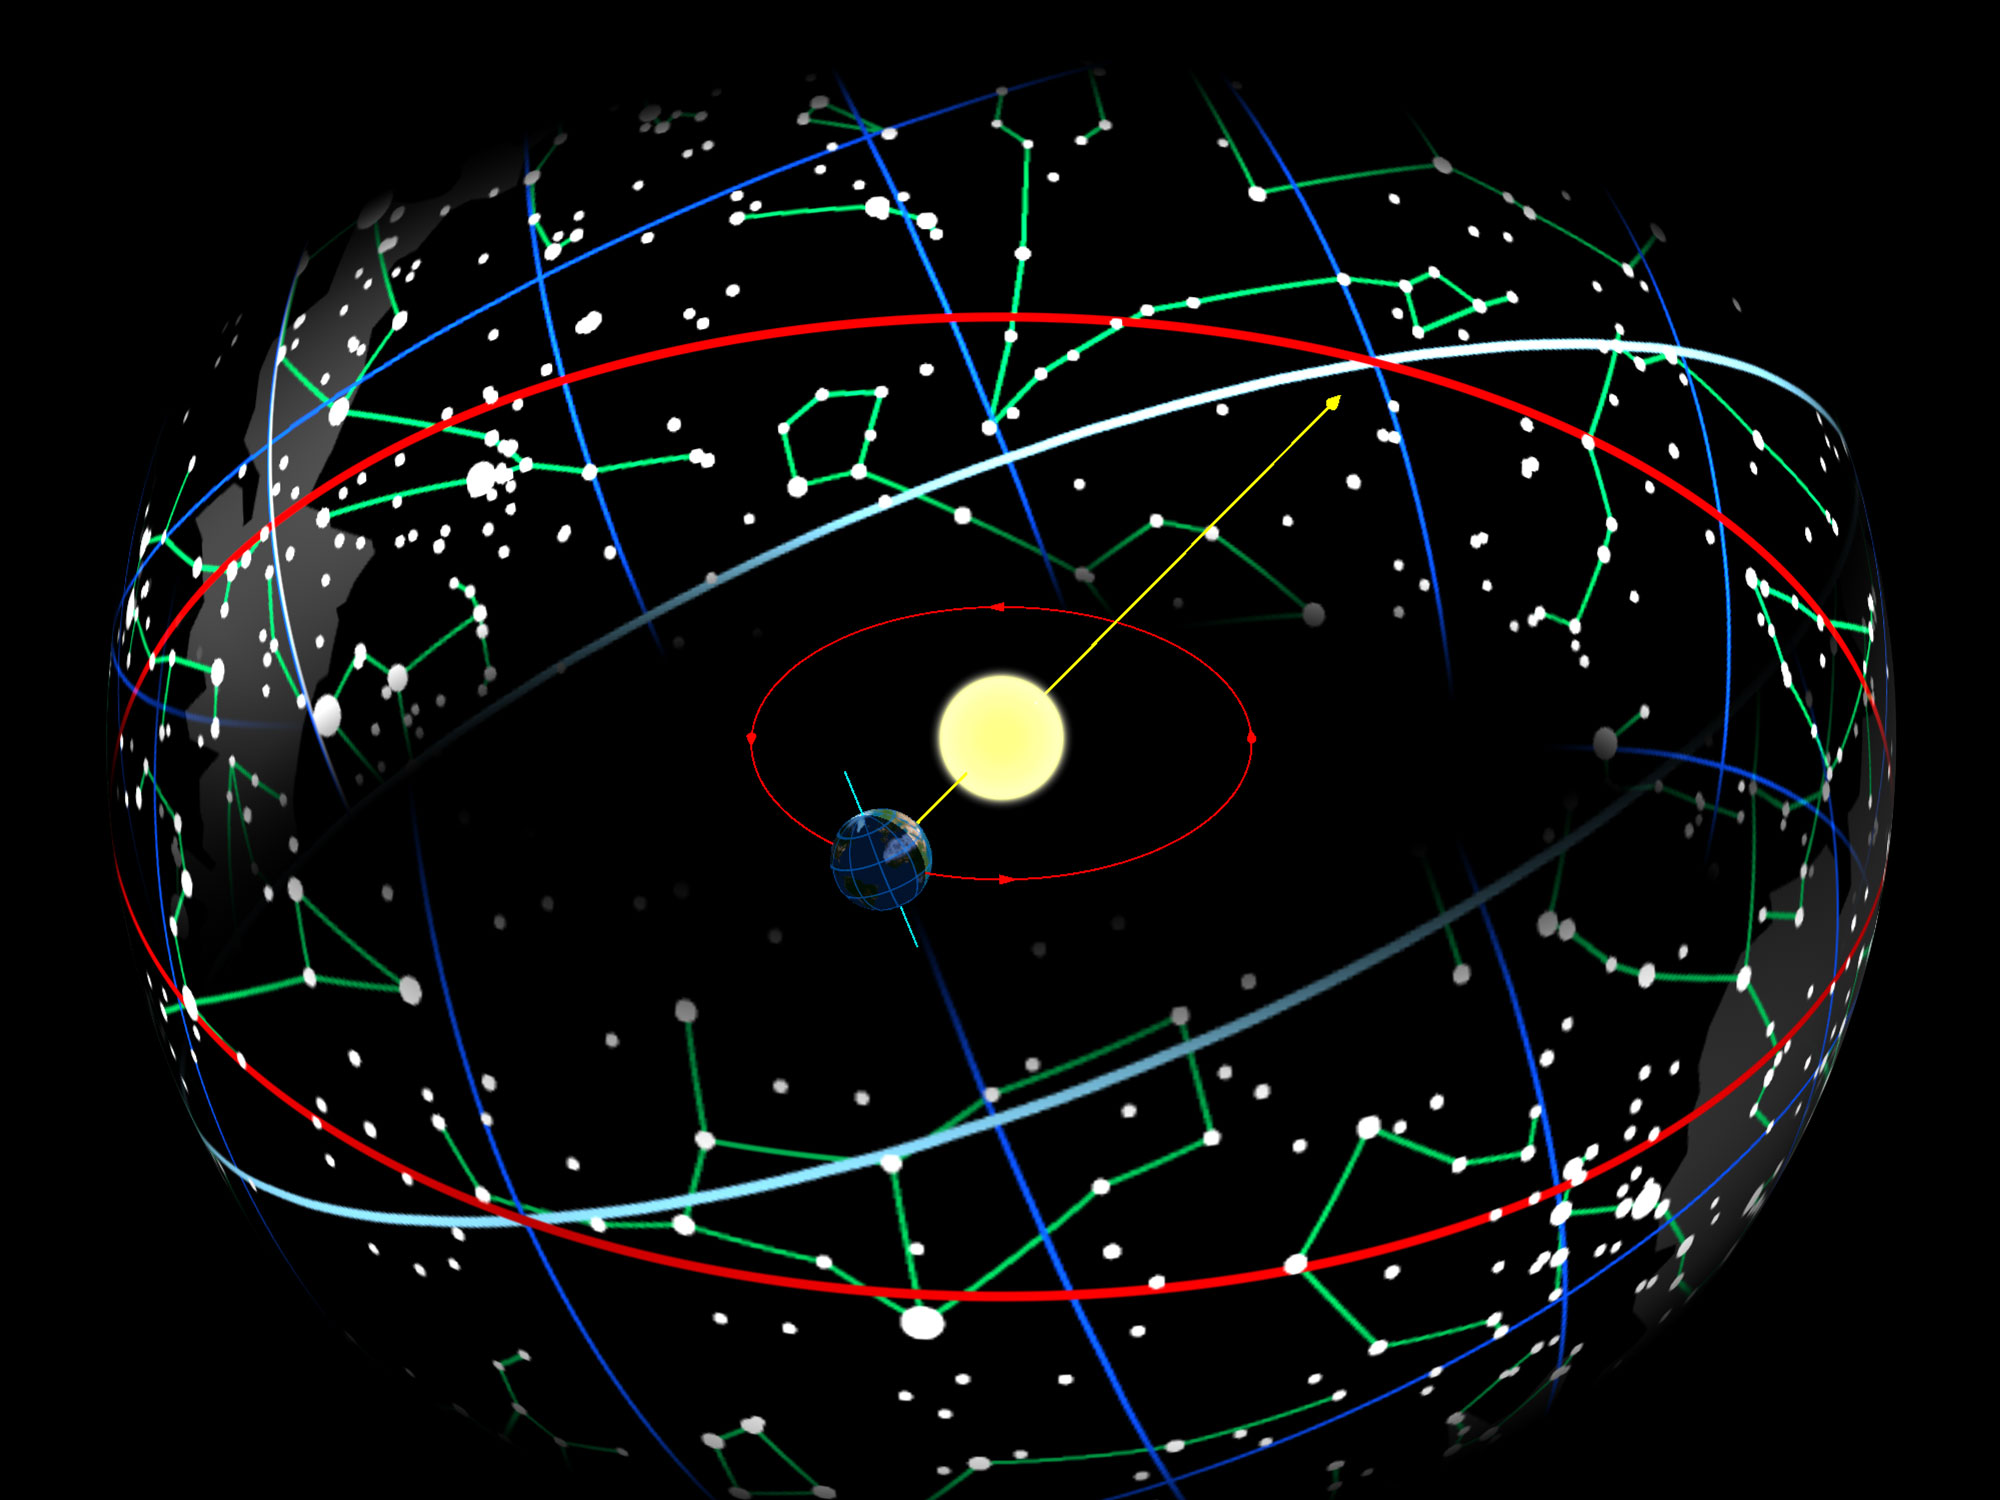 De aarde in zijn baan rond de zon zorgt ervoor dat de zon op de hemelbol verschijnt langs de ecliptica (rode cirkel), die 23.44 ° is gekanteld ten opzichte van de hemelequator (blauwwit).